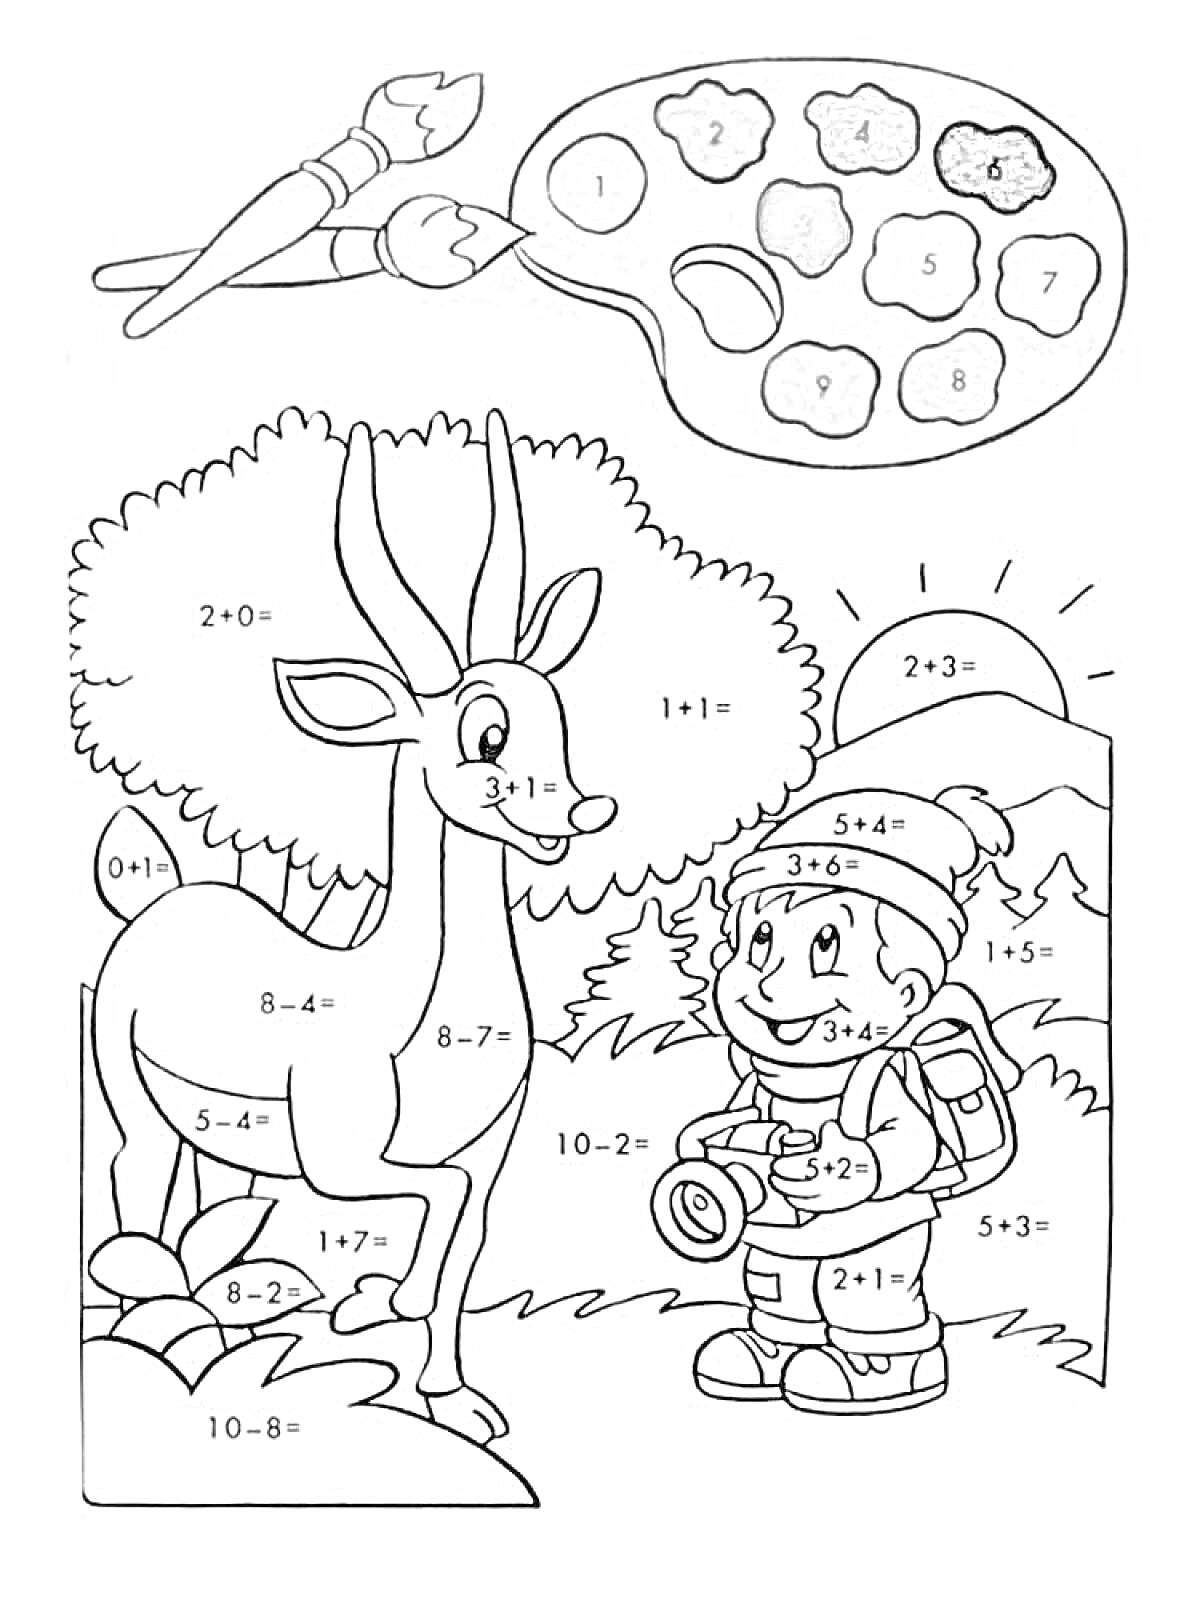 Раскраска Горы, дерево, олень и ребенок с фотоаппаратом